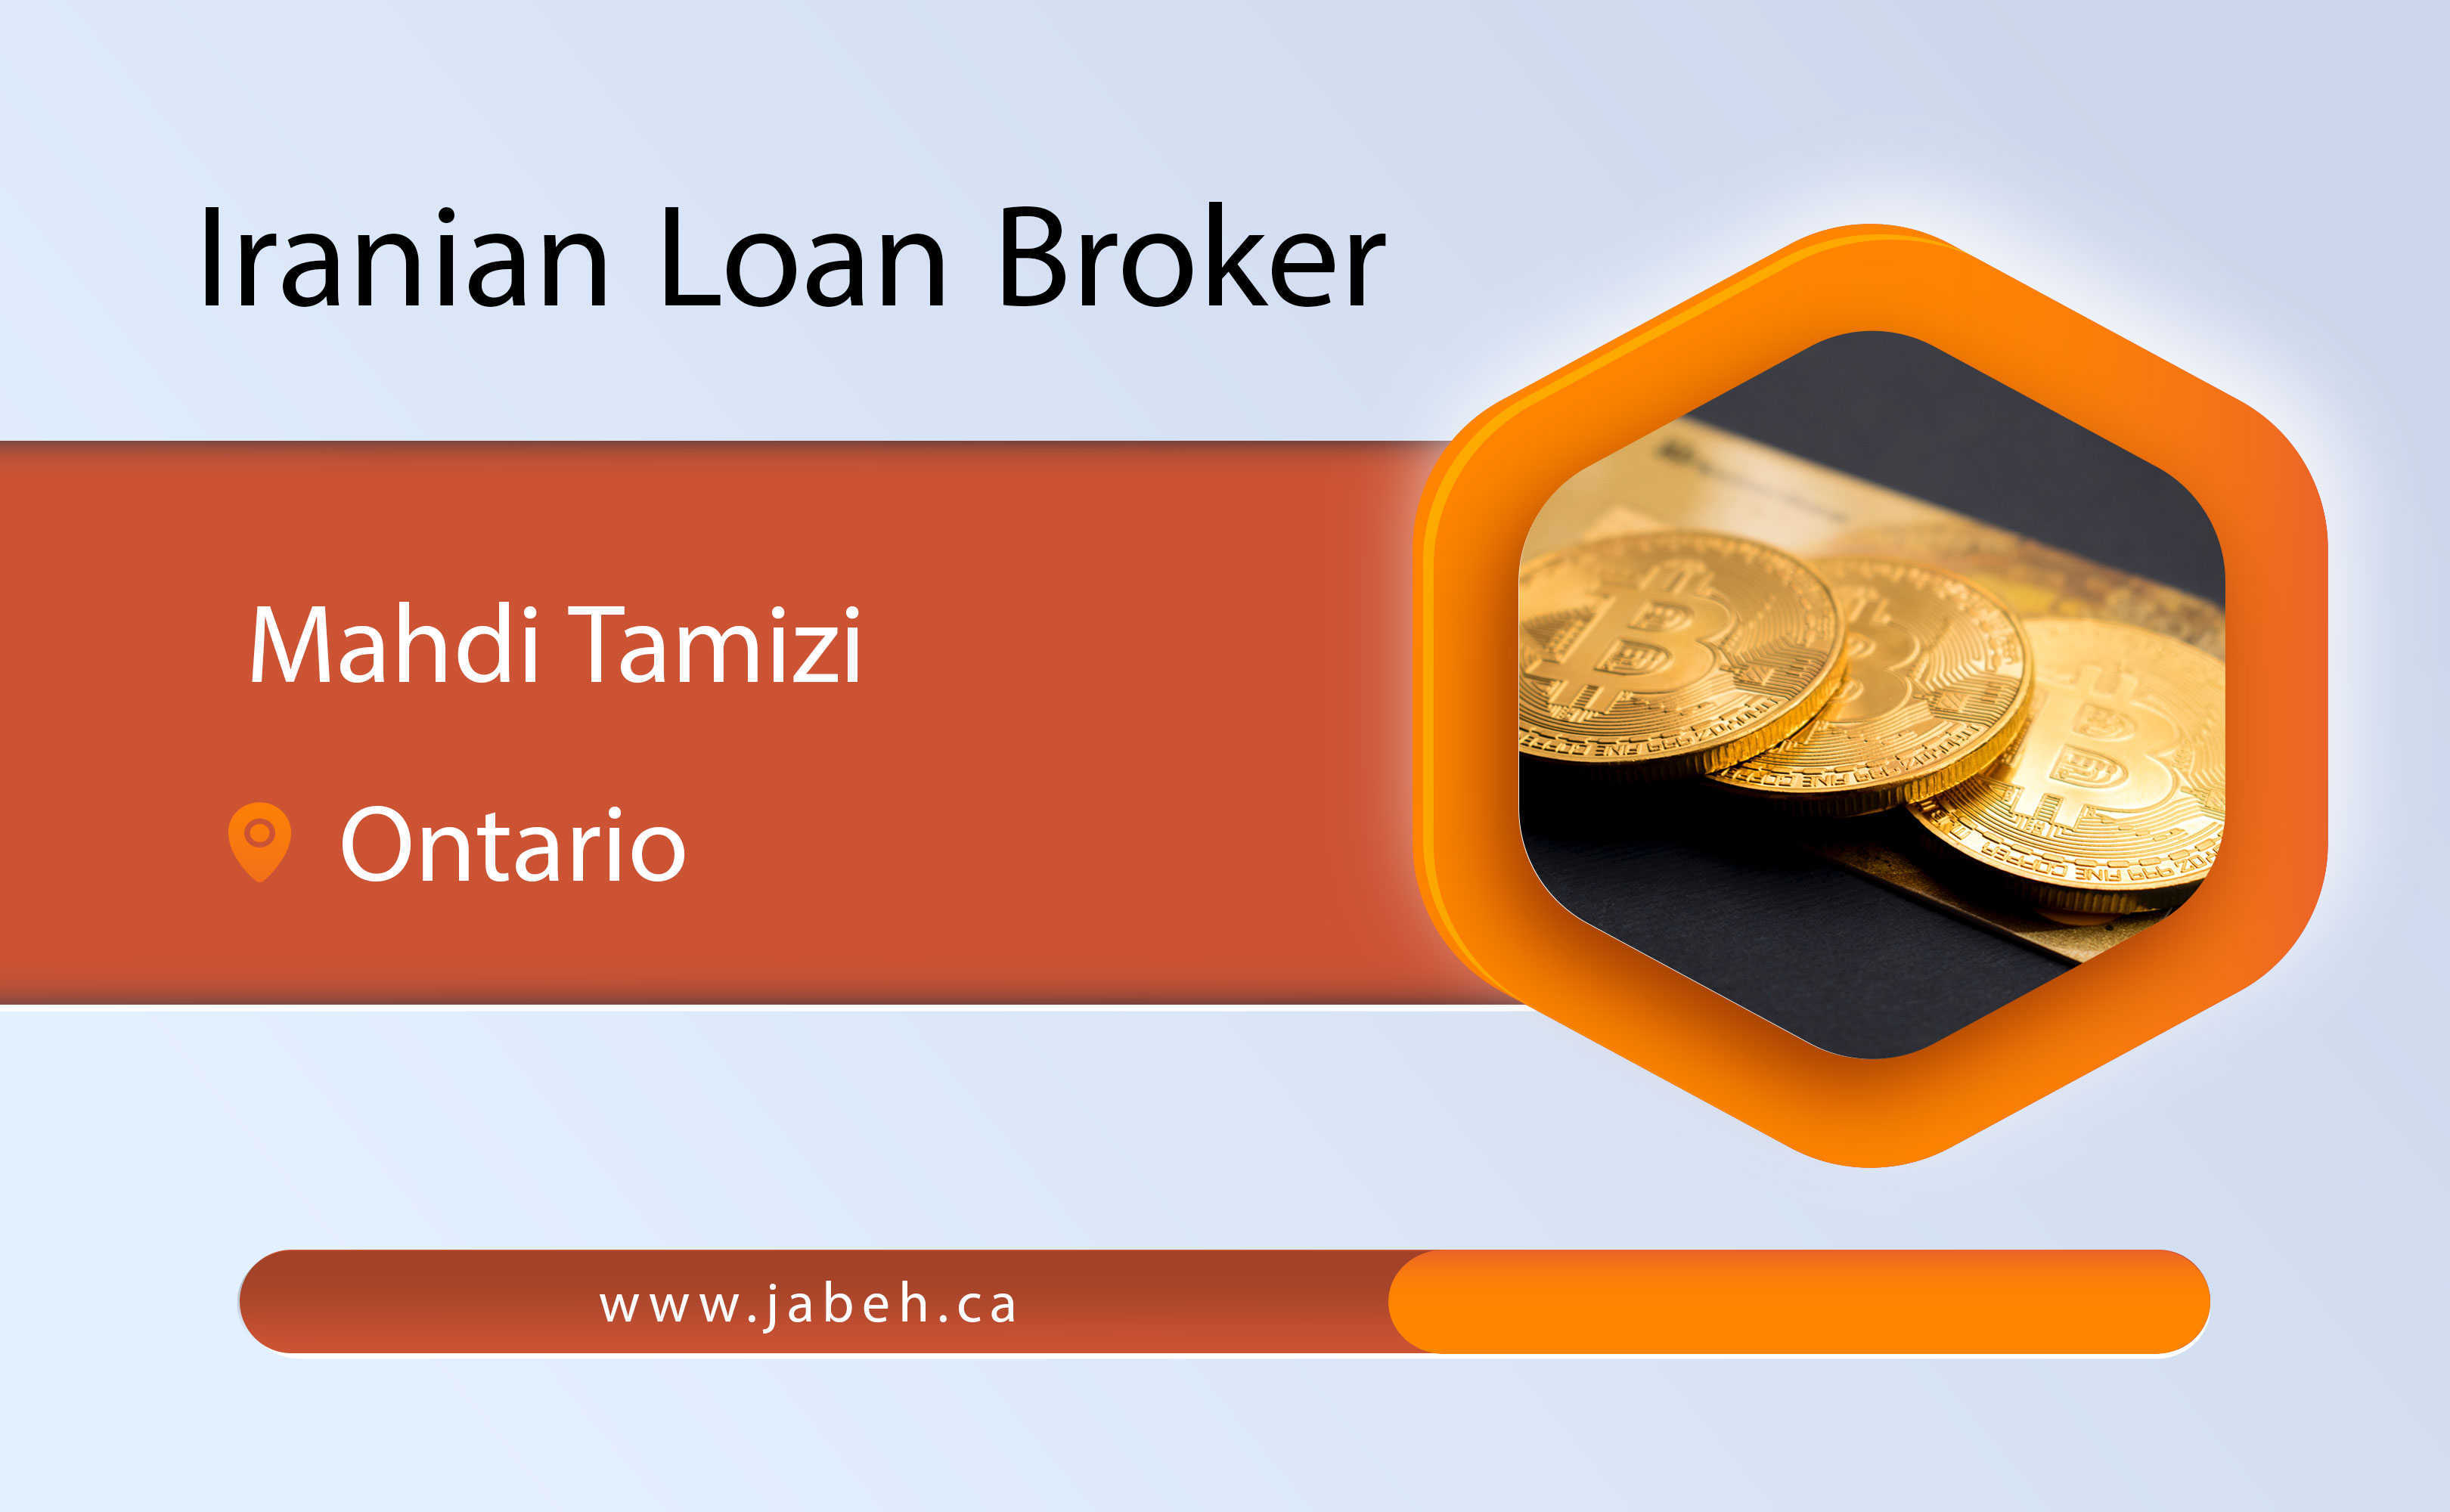 Iranian loan broker Mehdi Tamizhi in Ontario